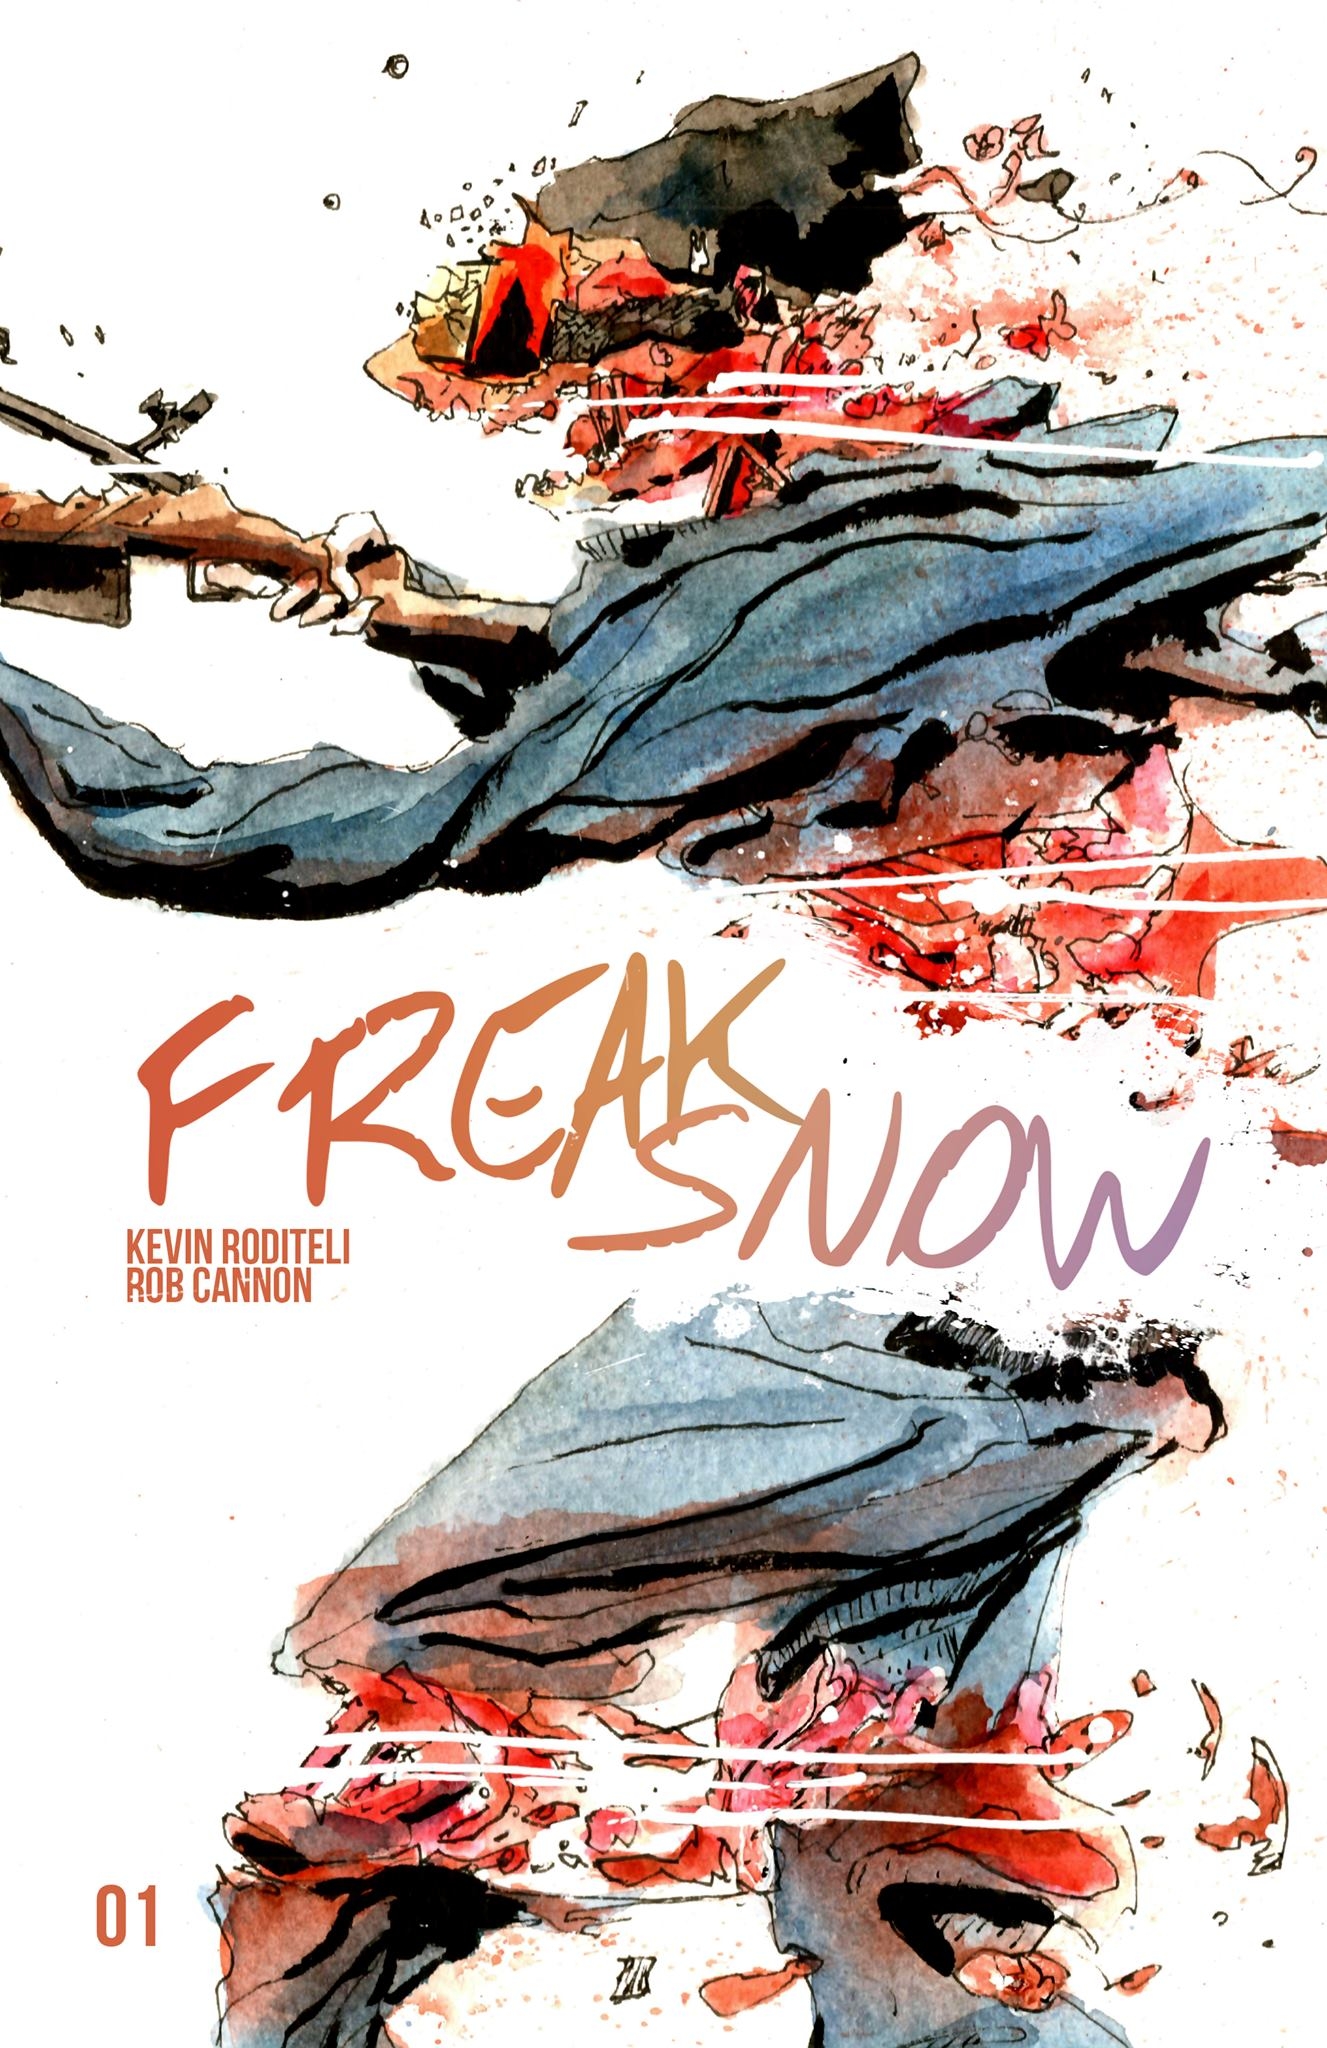 Here’s Freak Snow #1 Variant Cover!